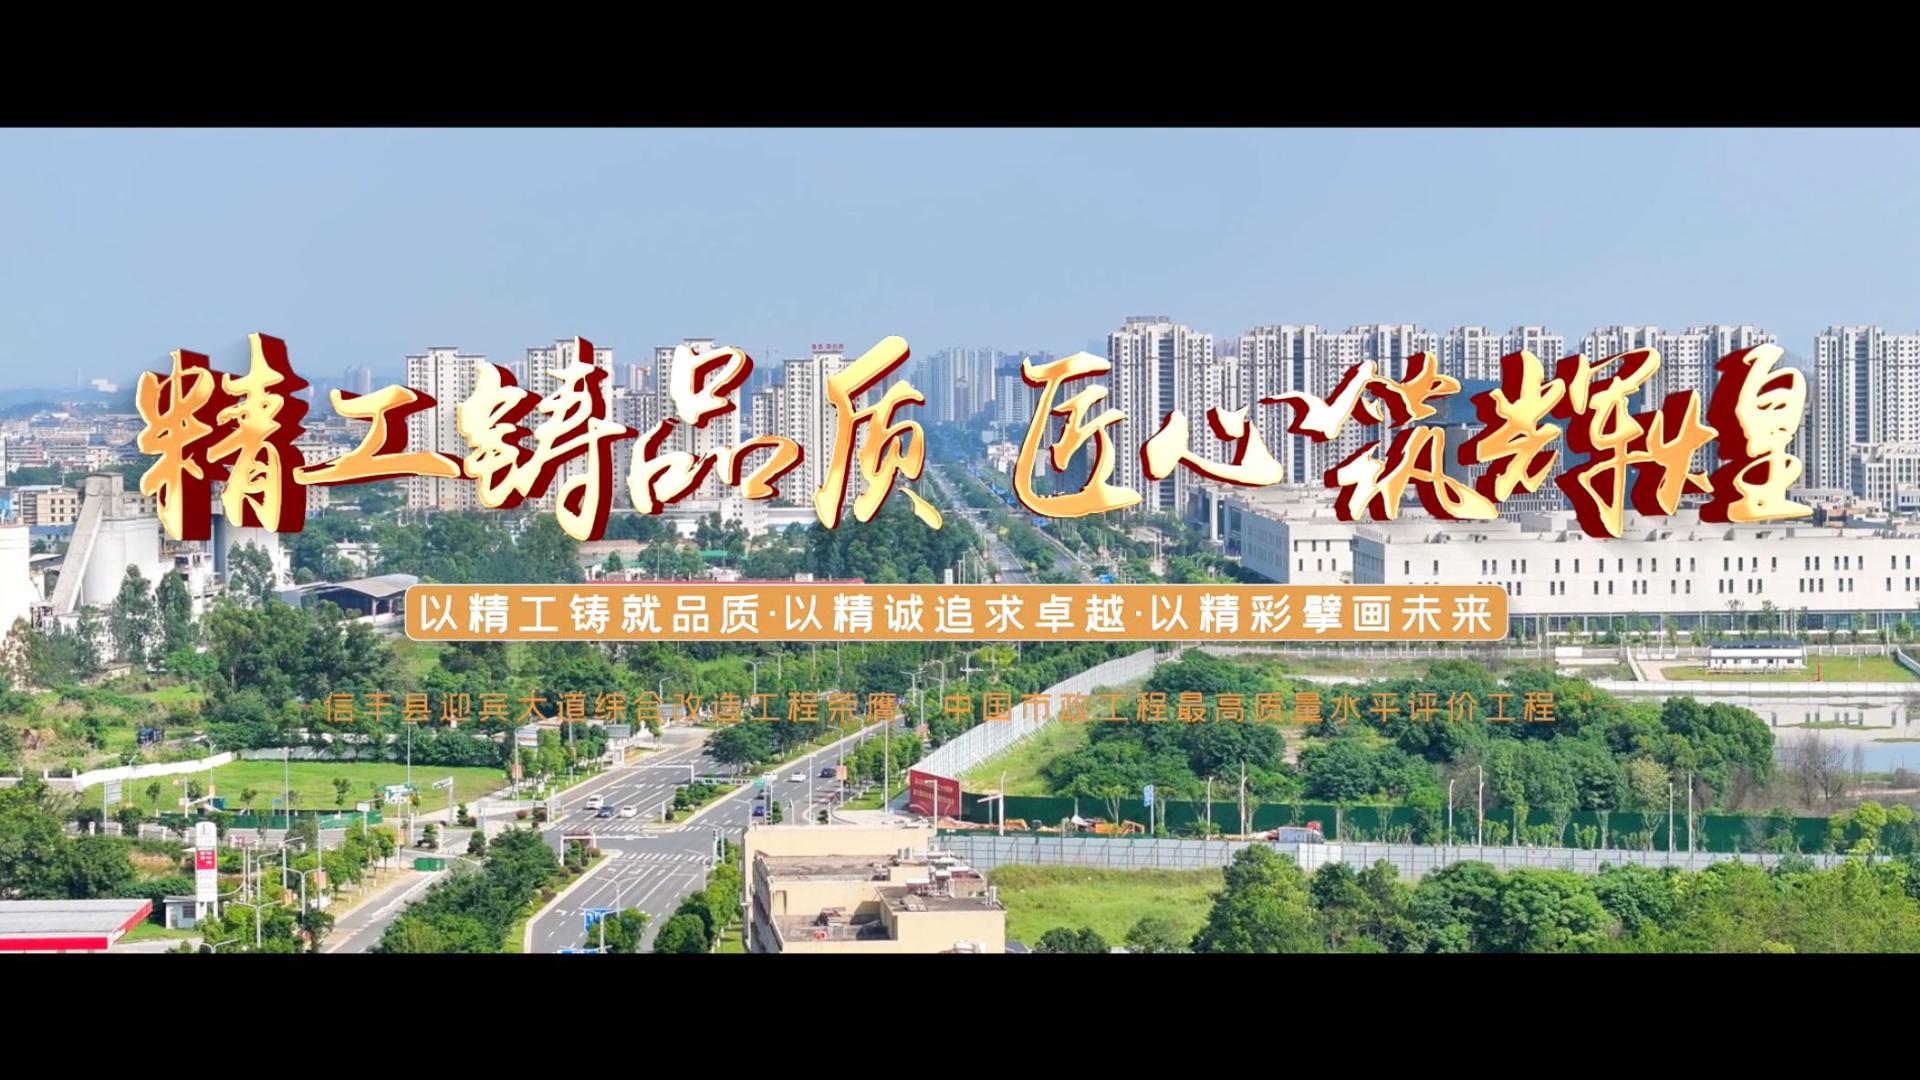 信丰县迎宾大道综合改造工程荣膺中国市政工程最高质量水平评价工程